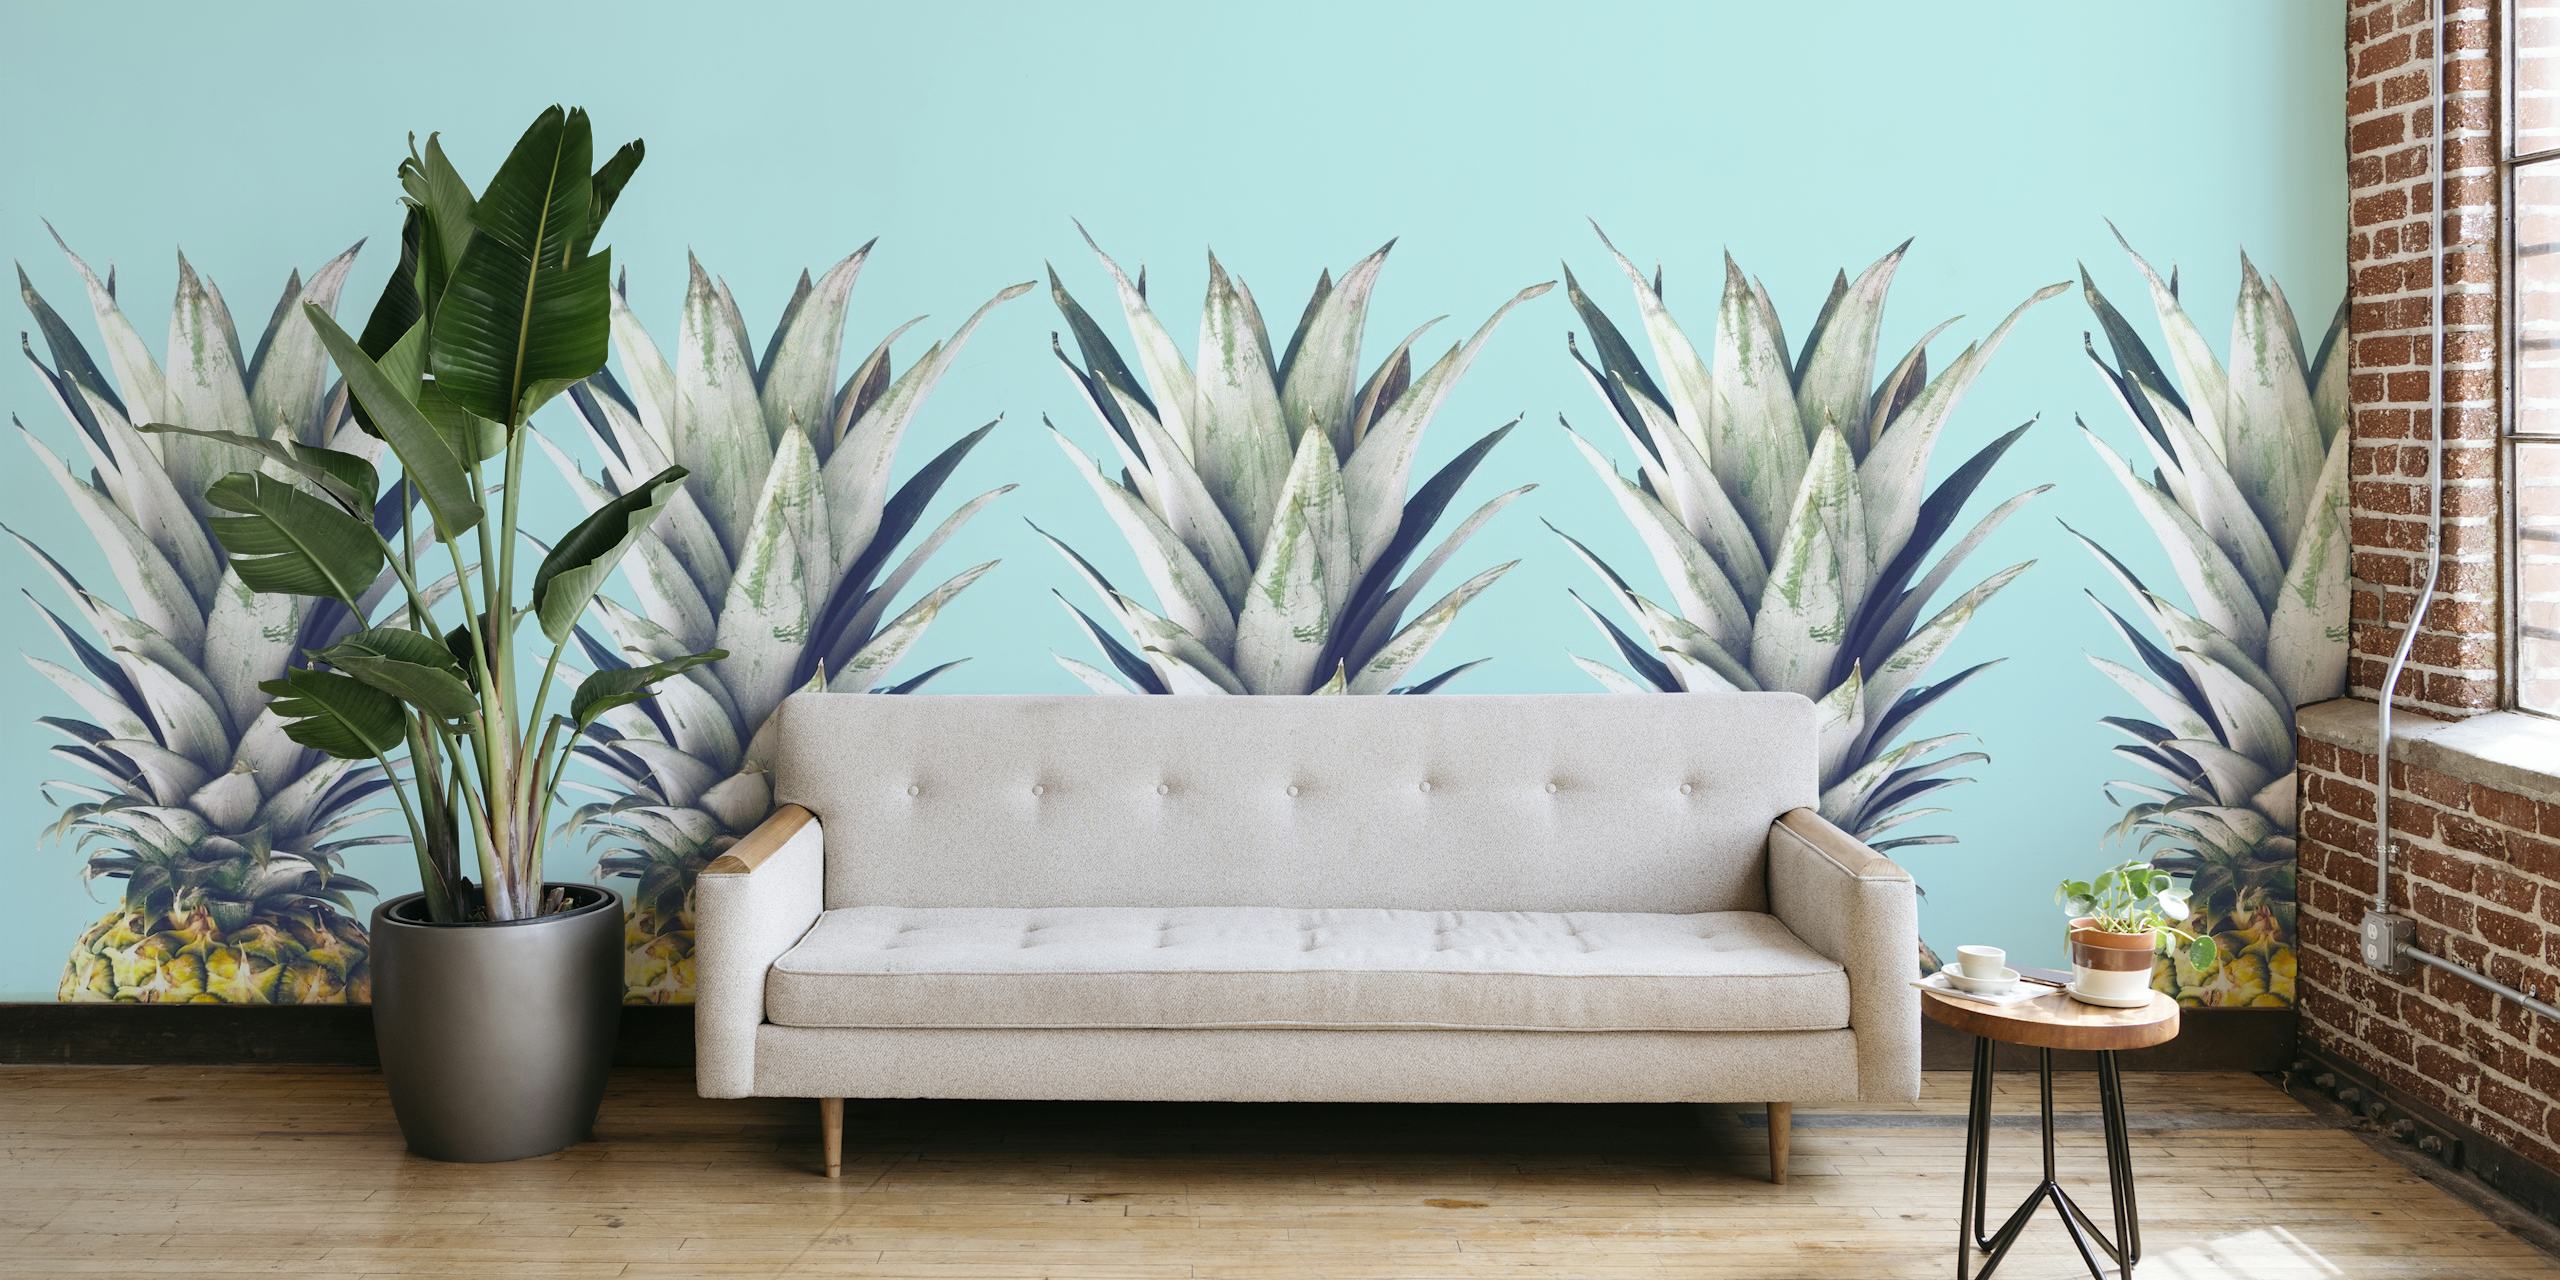 Fototapeta Stylizované ananasy na pastelově modrém pozadí